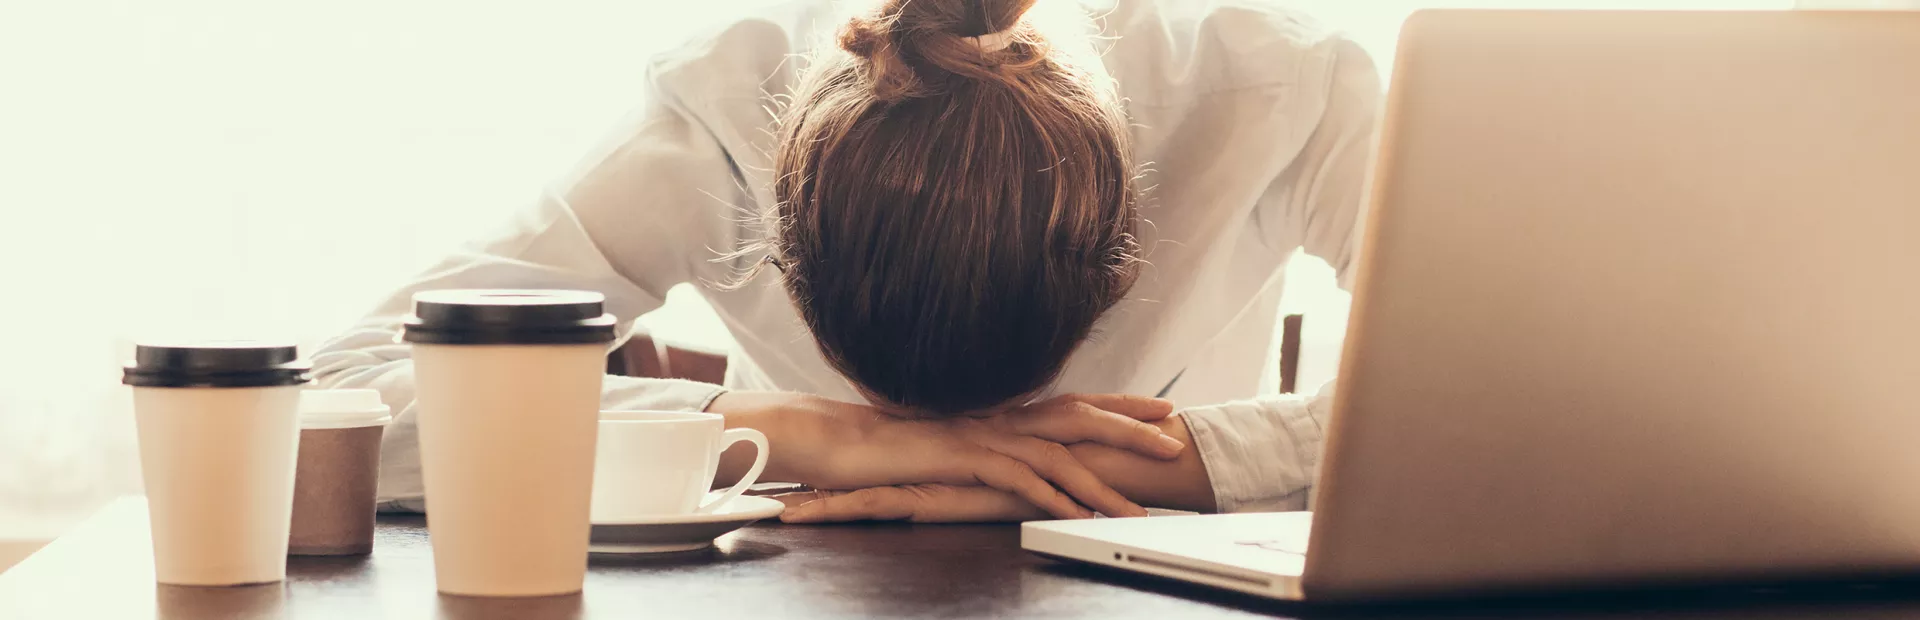 Mujer agobiada apoya su cabeza sobre sus manos frente al ordenador